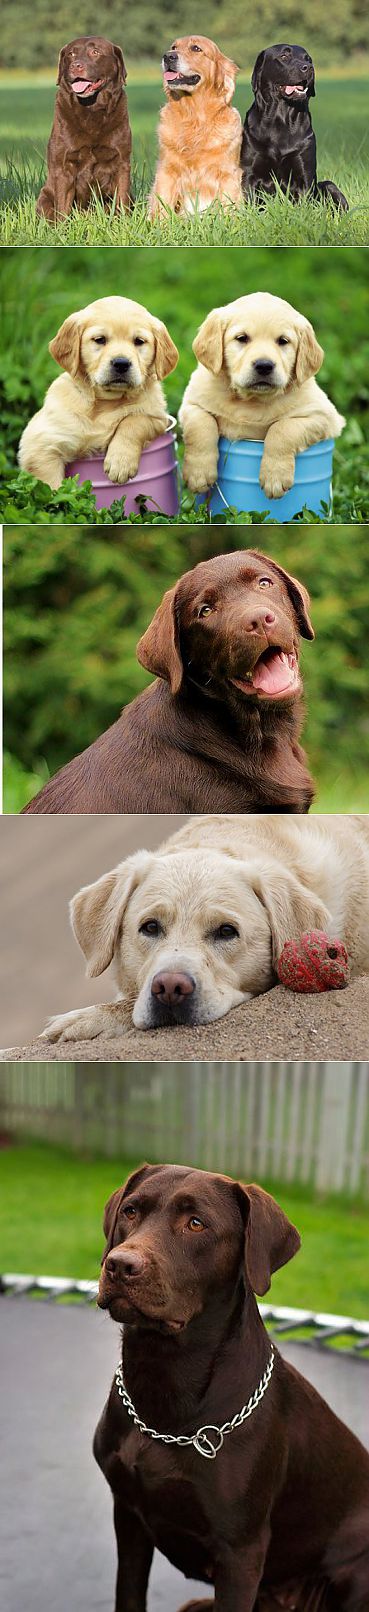 Лабрадор ретривер - описание породы, фото, правильный уход, выбор клички для собаки | Animal.ru